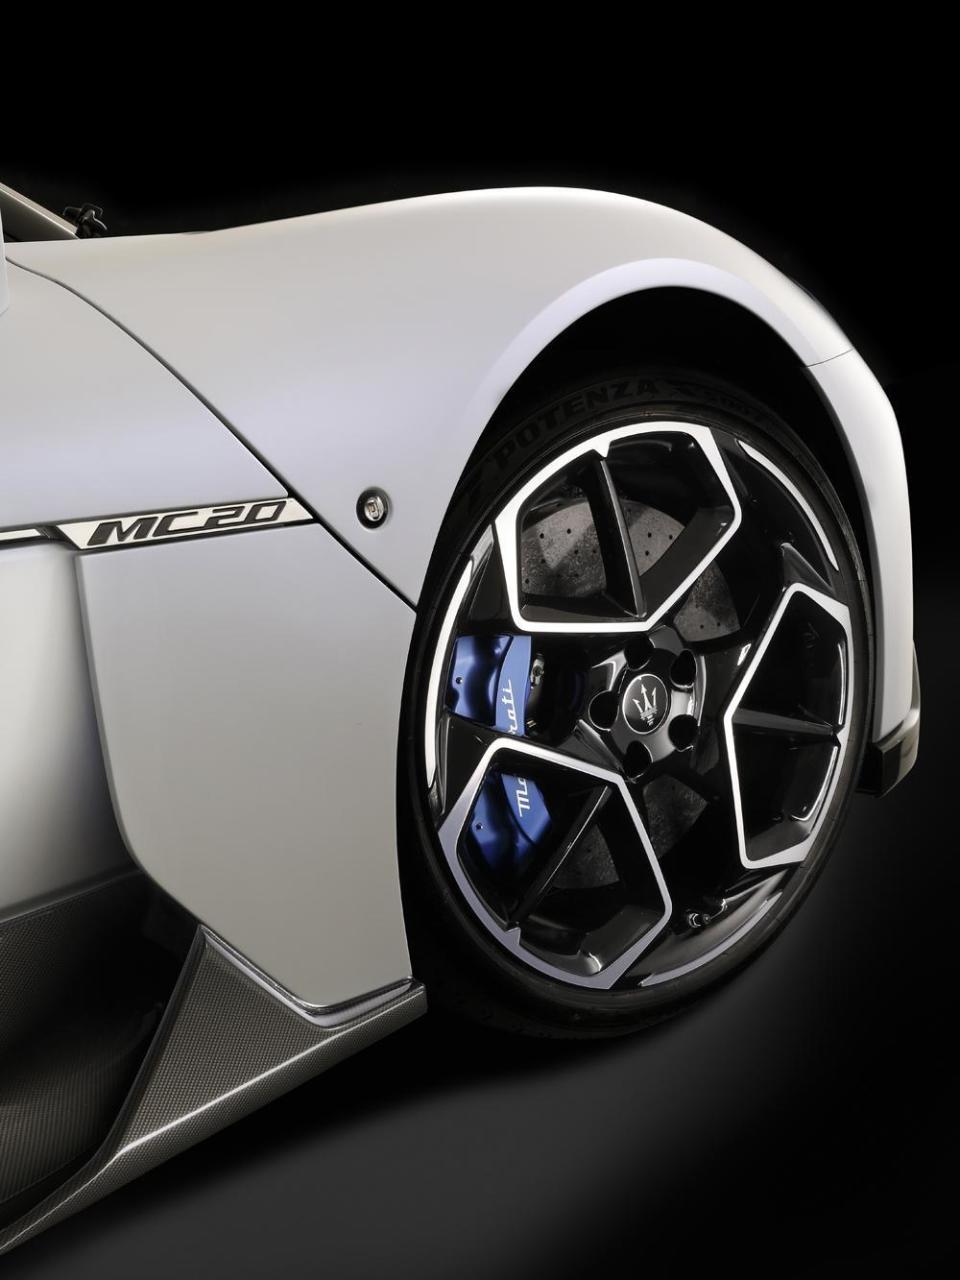 前6後4活塞Brembo高性能煞車卡鉗搭配碳纖維陶瓷煞車碟盤 (臺灣專屬標配) 所帶來強大制動表現。